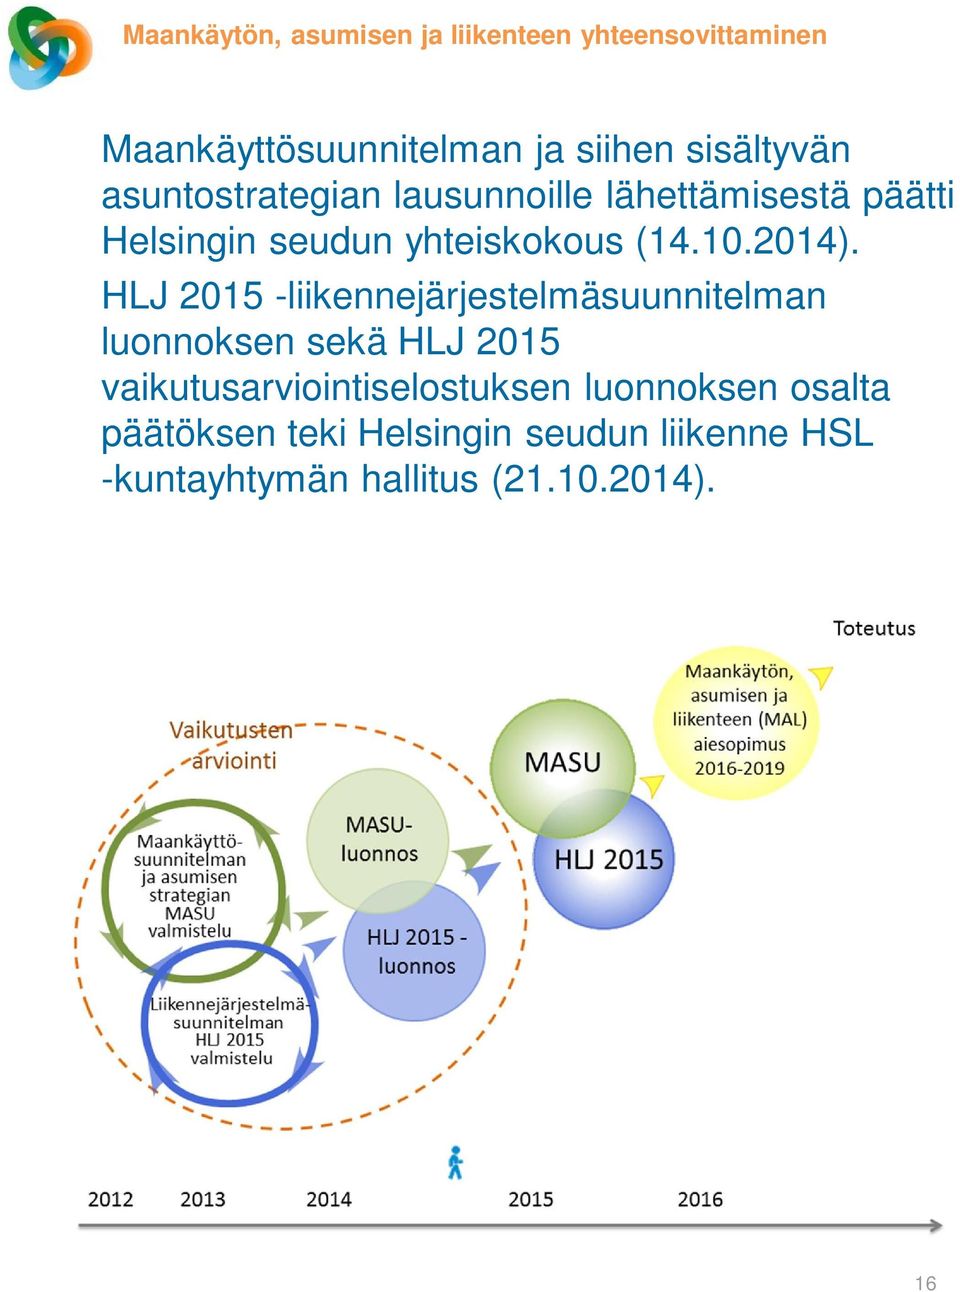 HLJ 2015 -liikennejärjestelmäsuunnitelman luonnoksen sekä HLJ 2015 vaikutusarviointiselostuksen